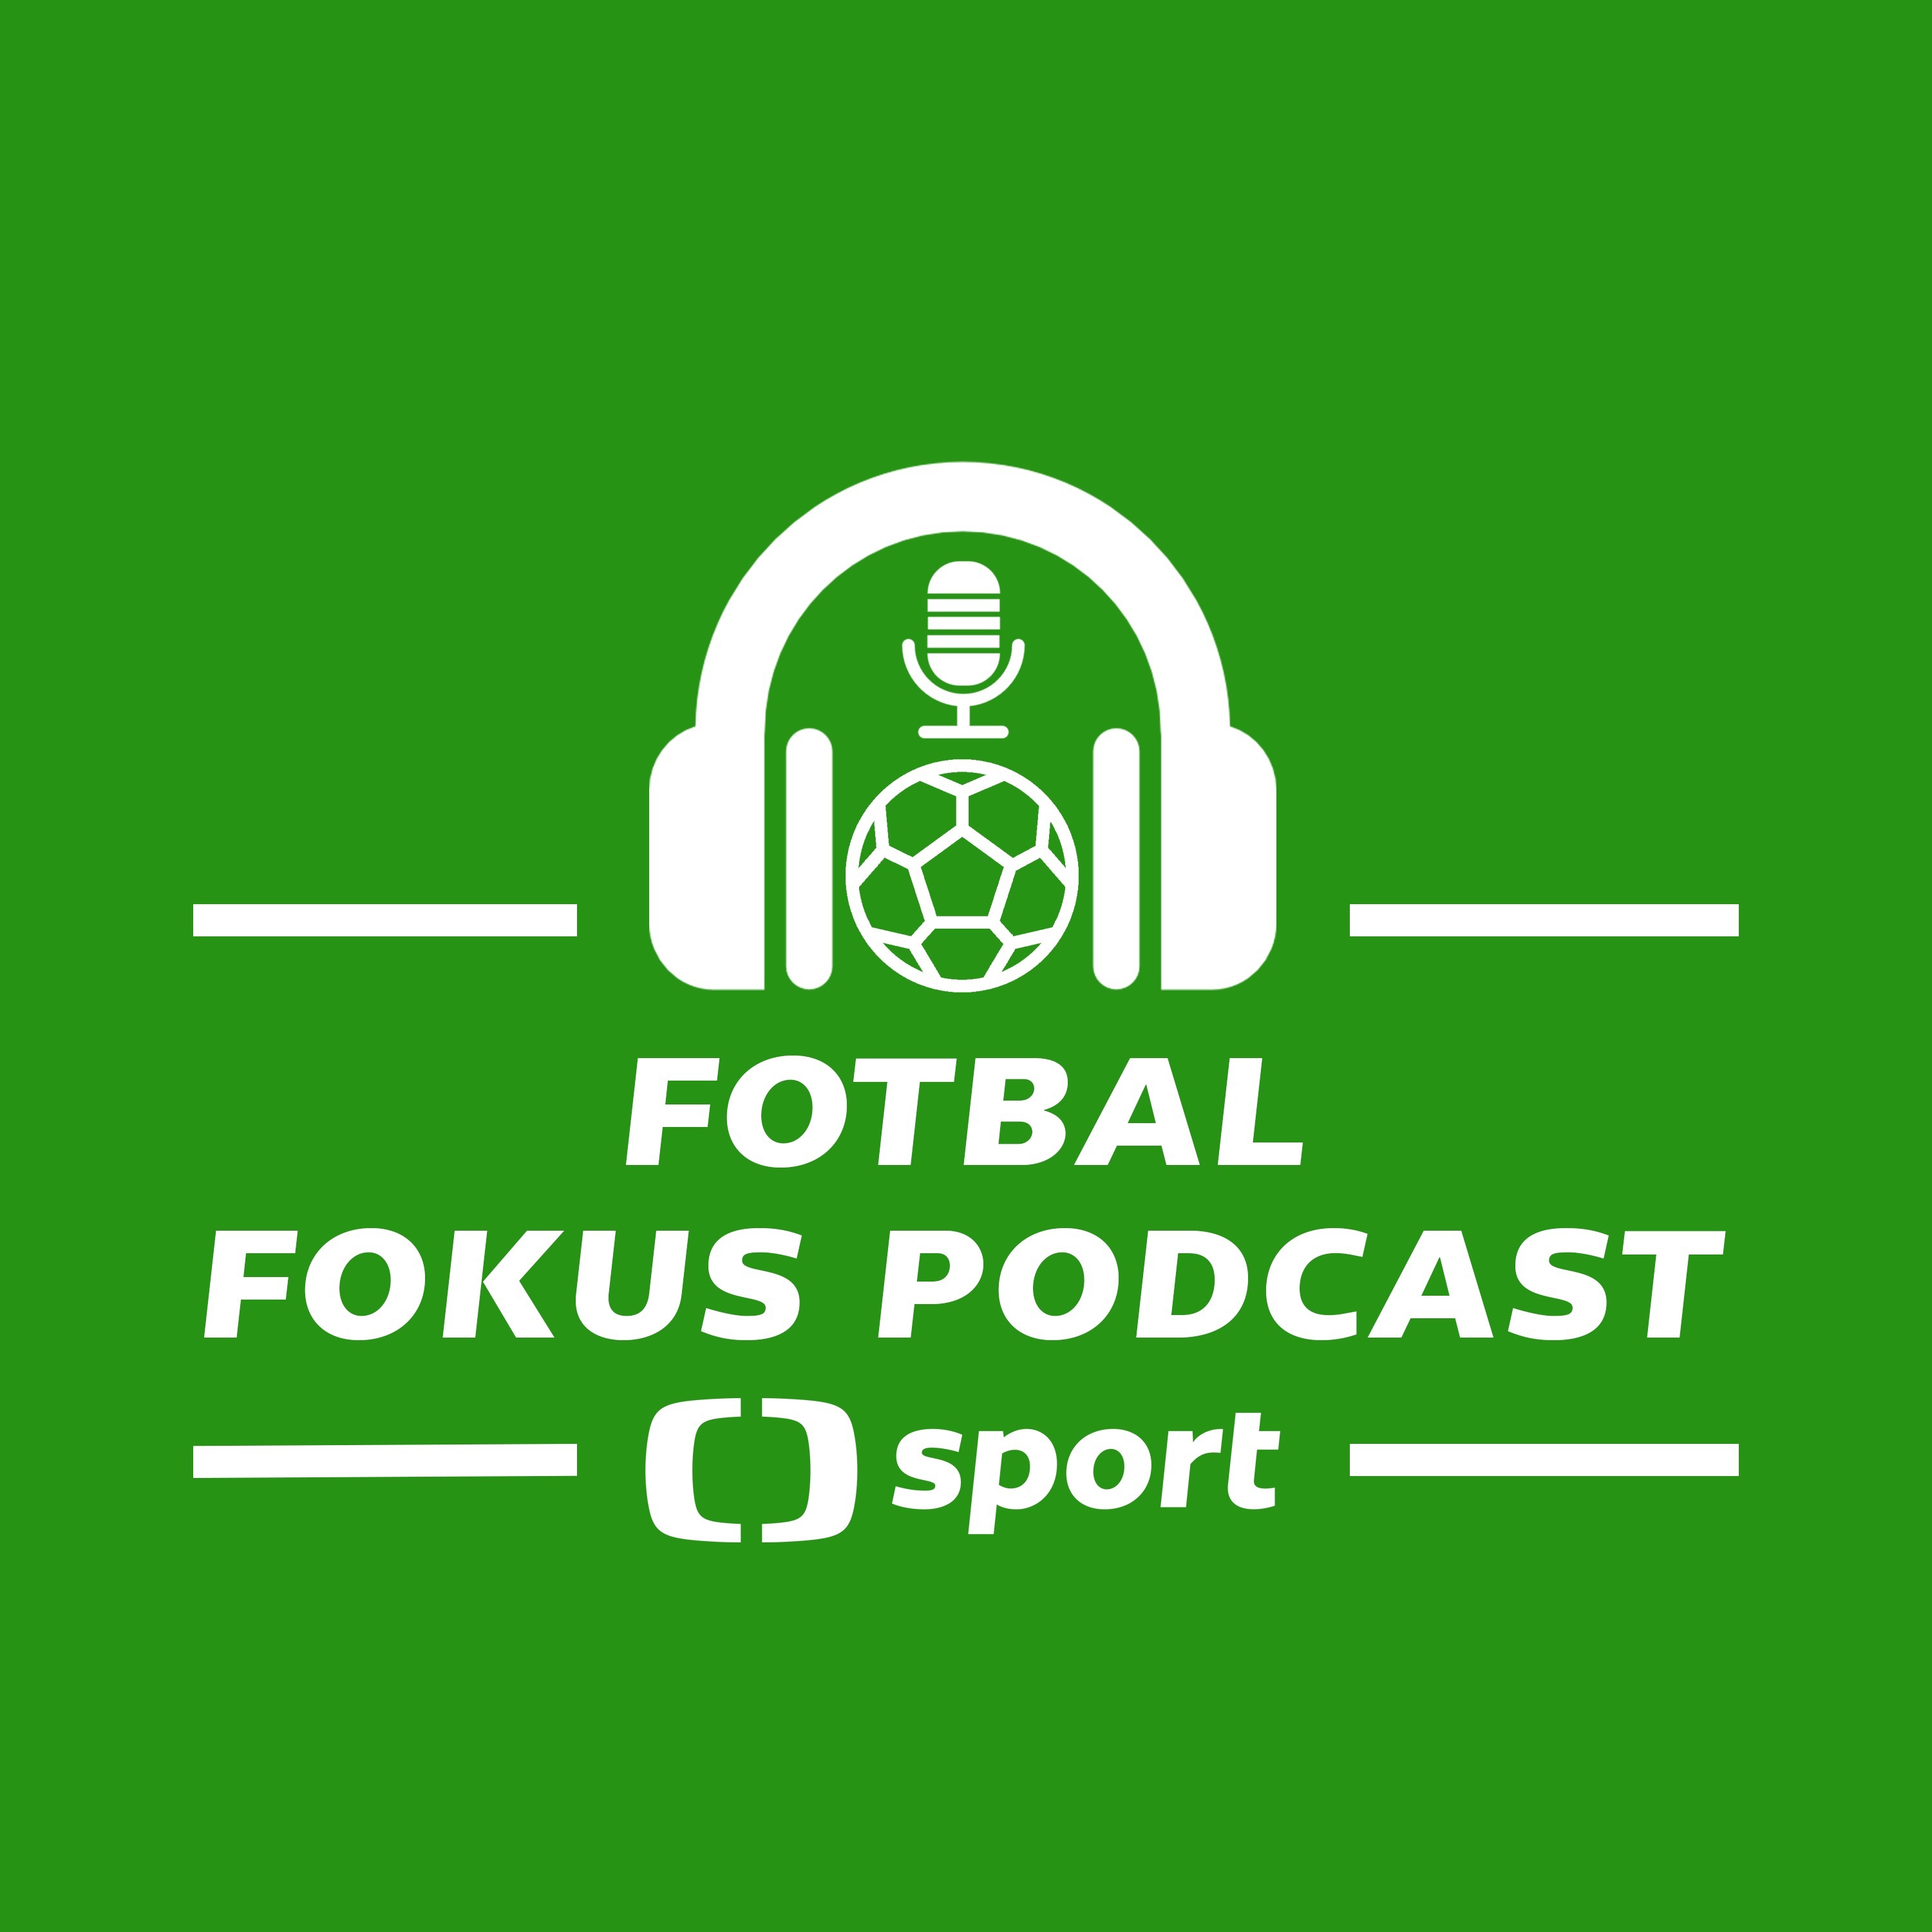 Fotbal fokus podcast: Co přinesla kauza Stanciu a udrží Liverpool vedení před City?